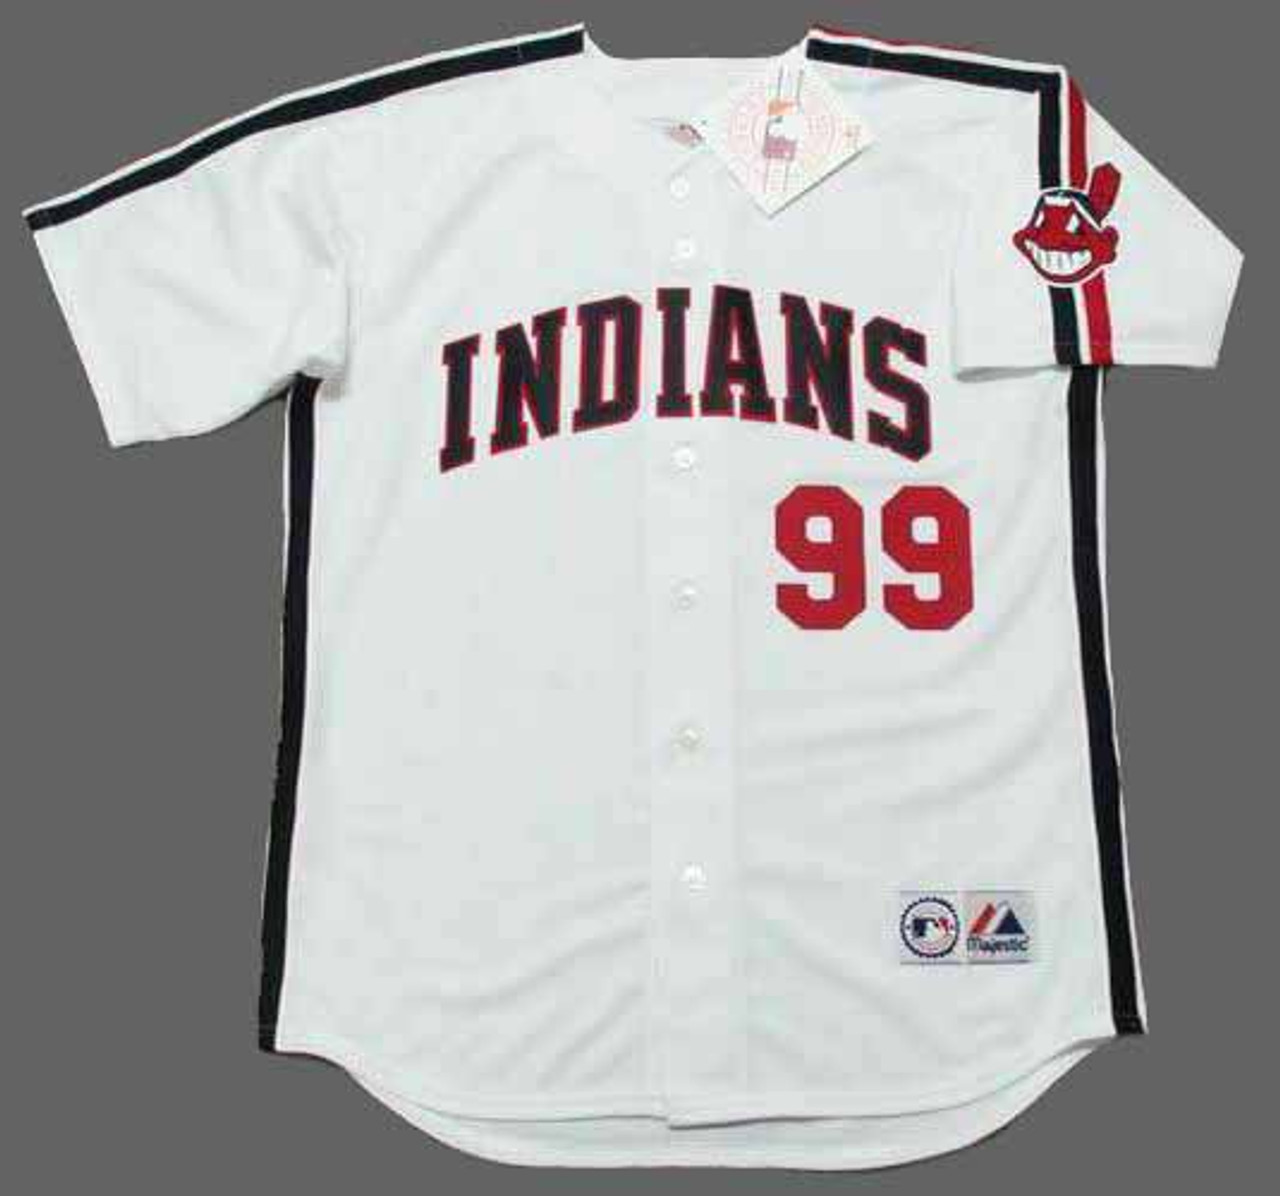 Rick Vaughn Wild Thing Jersey T-Shirt #99 Costume Ricky 80s Baseball Movie  Gift